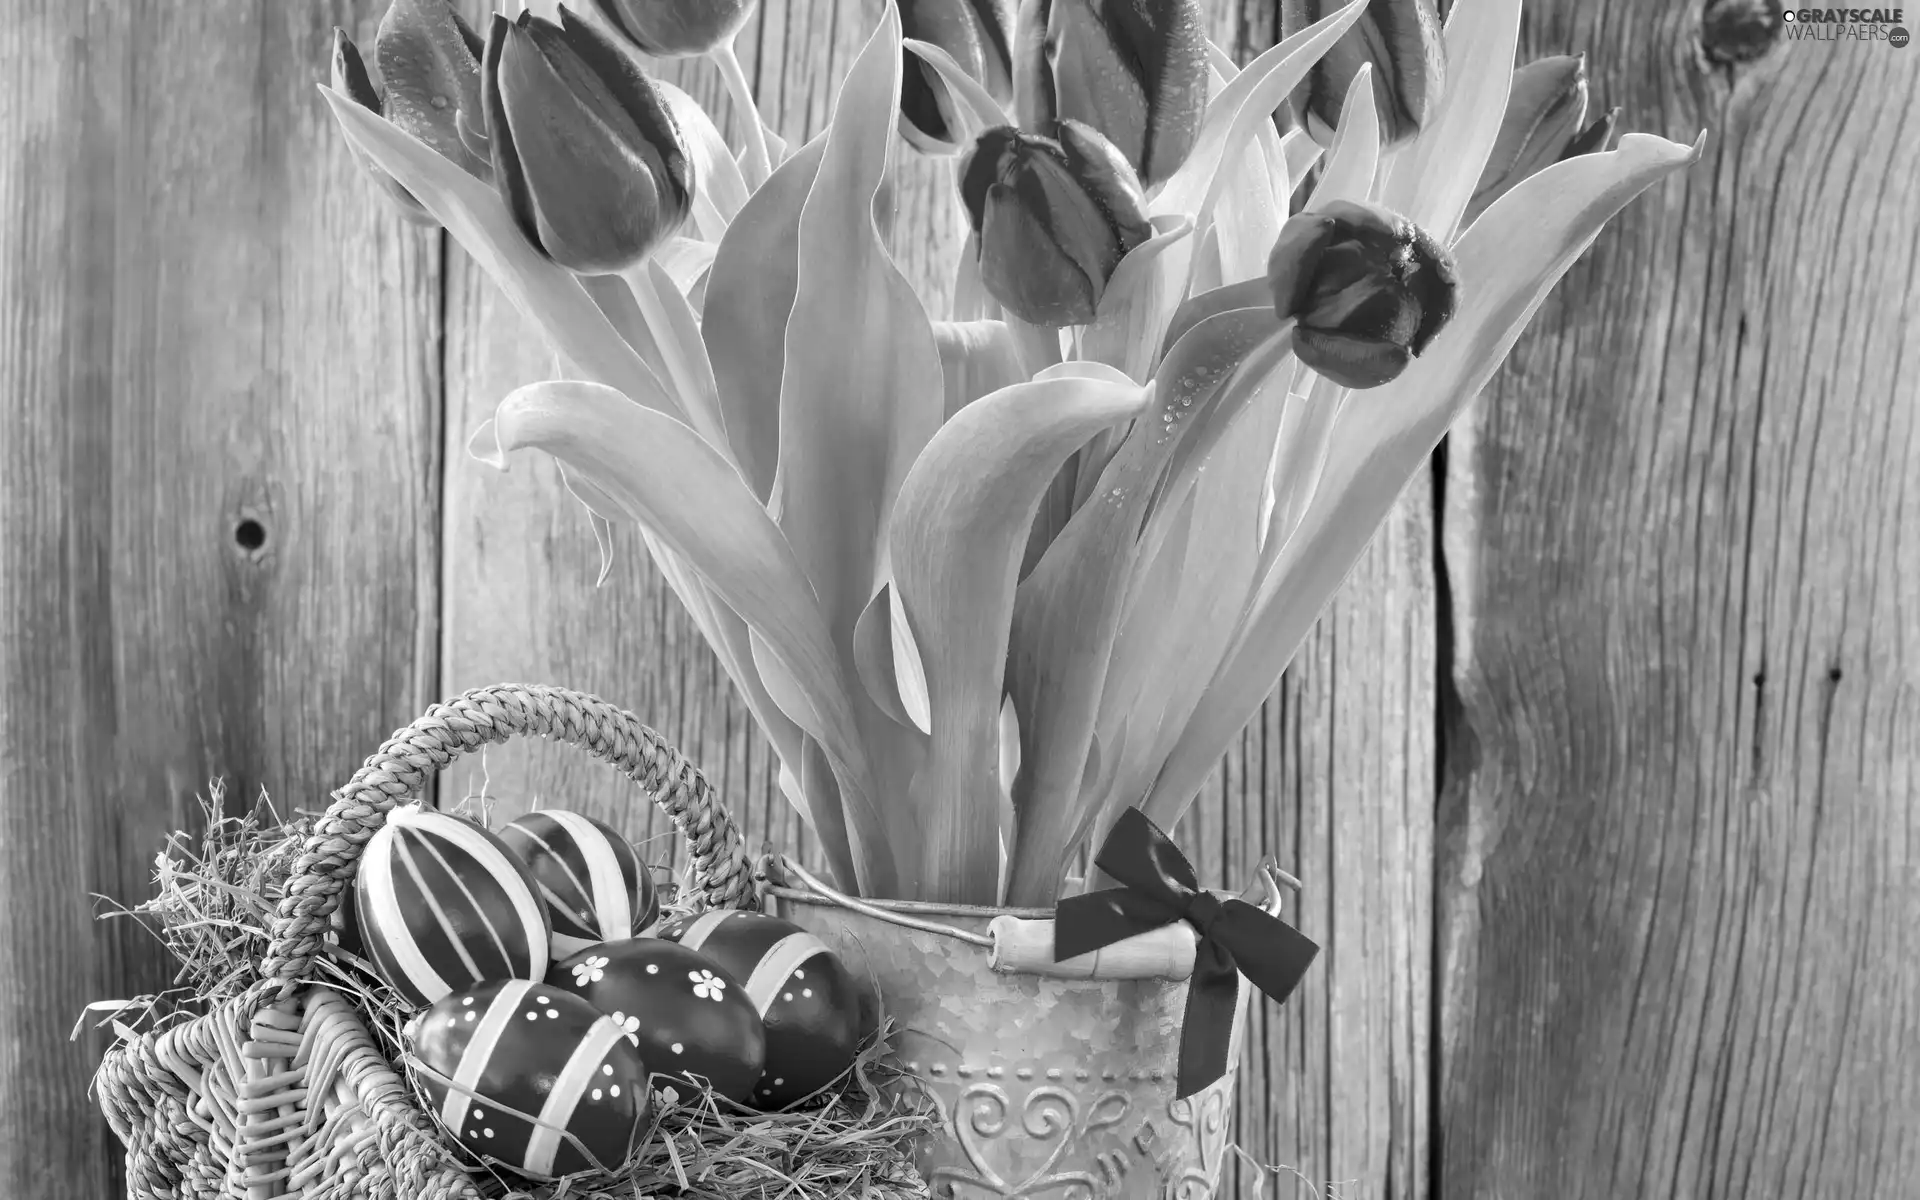 bow, bucket, eggs, Tulips, basket